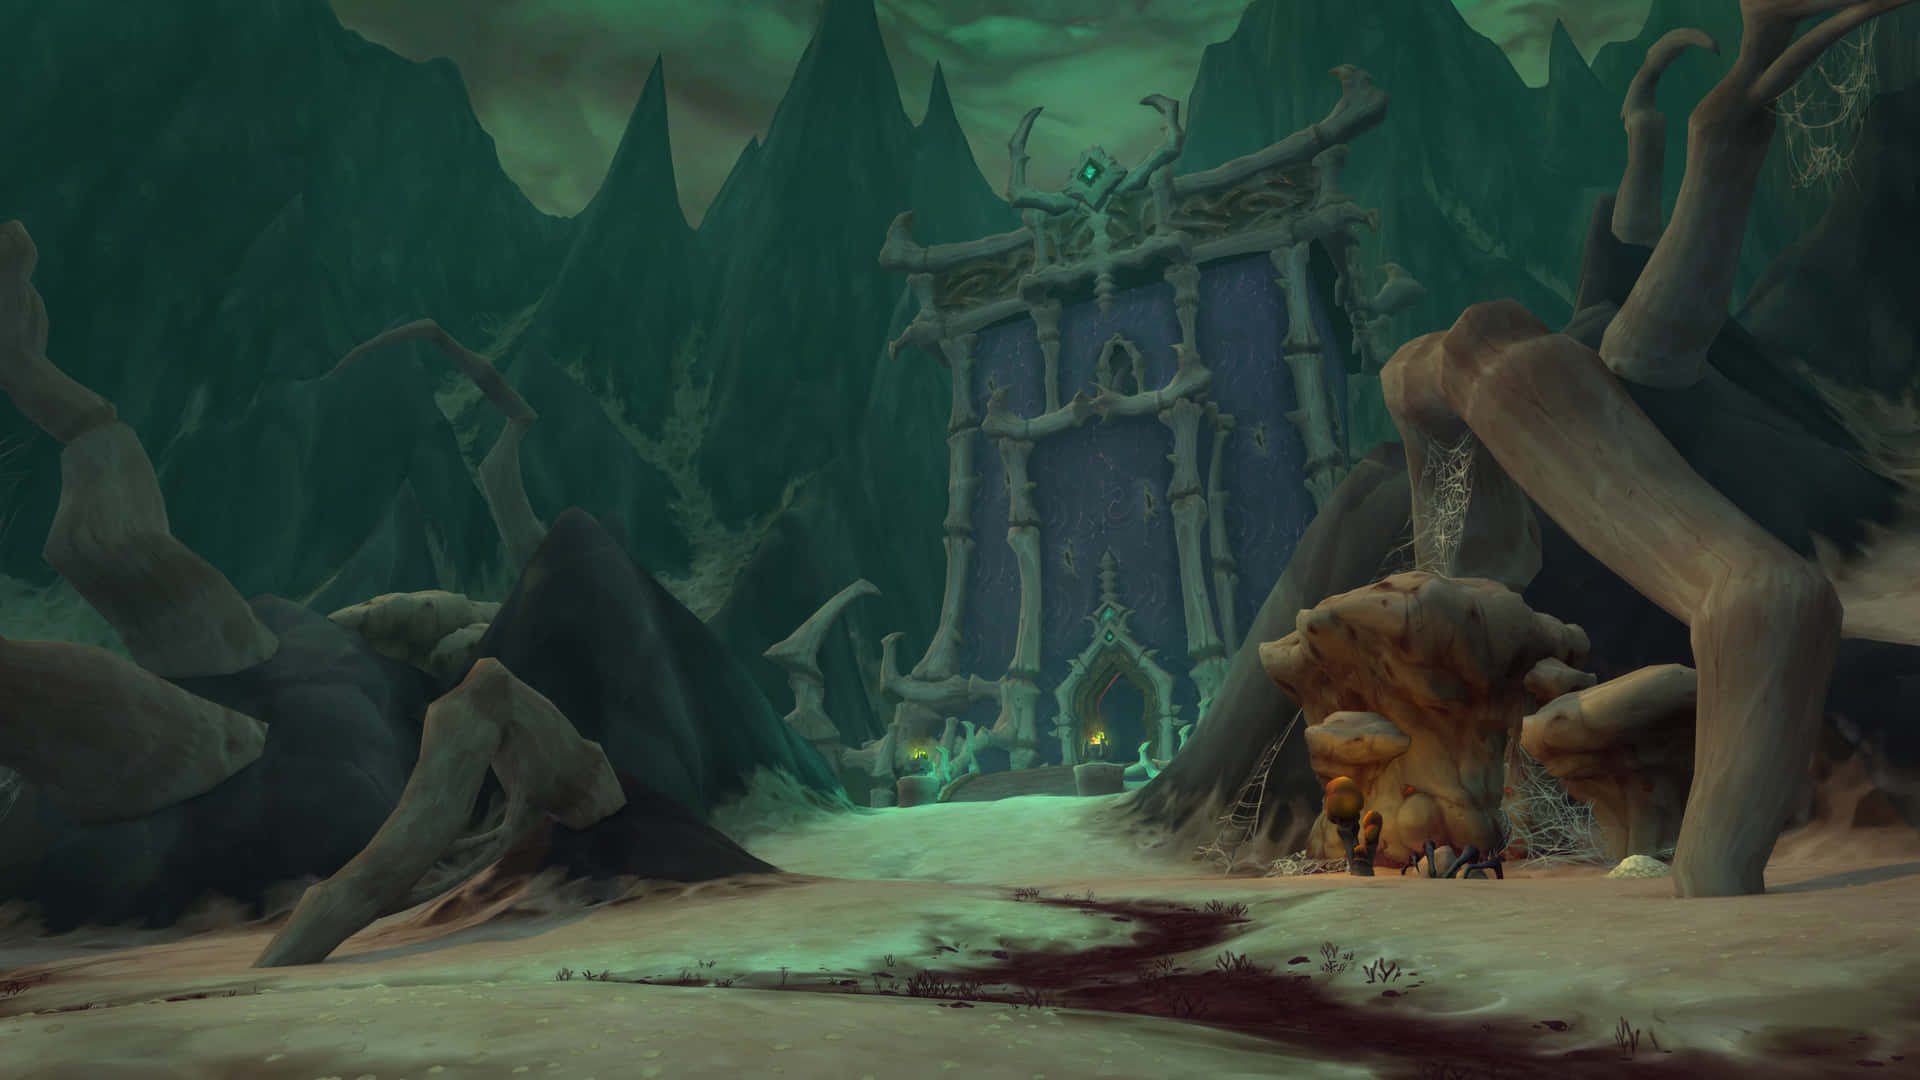 Udforsk et Brave Nyt Verdenskab med World of Warcraft Shadowlands Wallpapers. Wallpaper